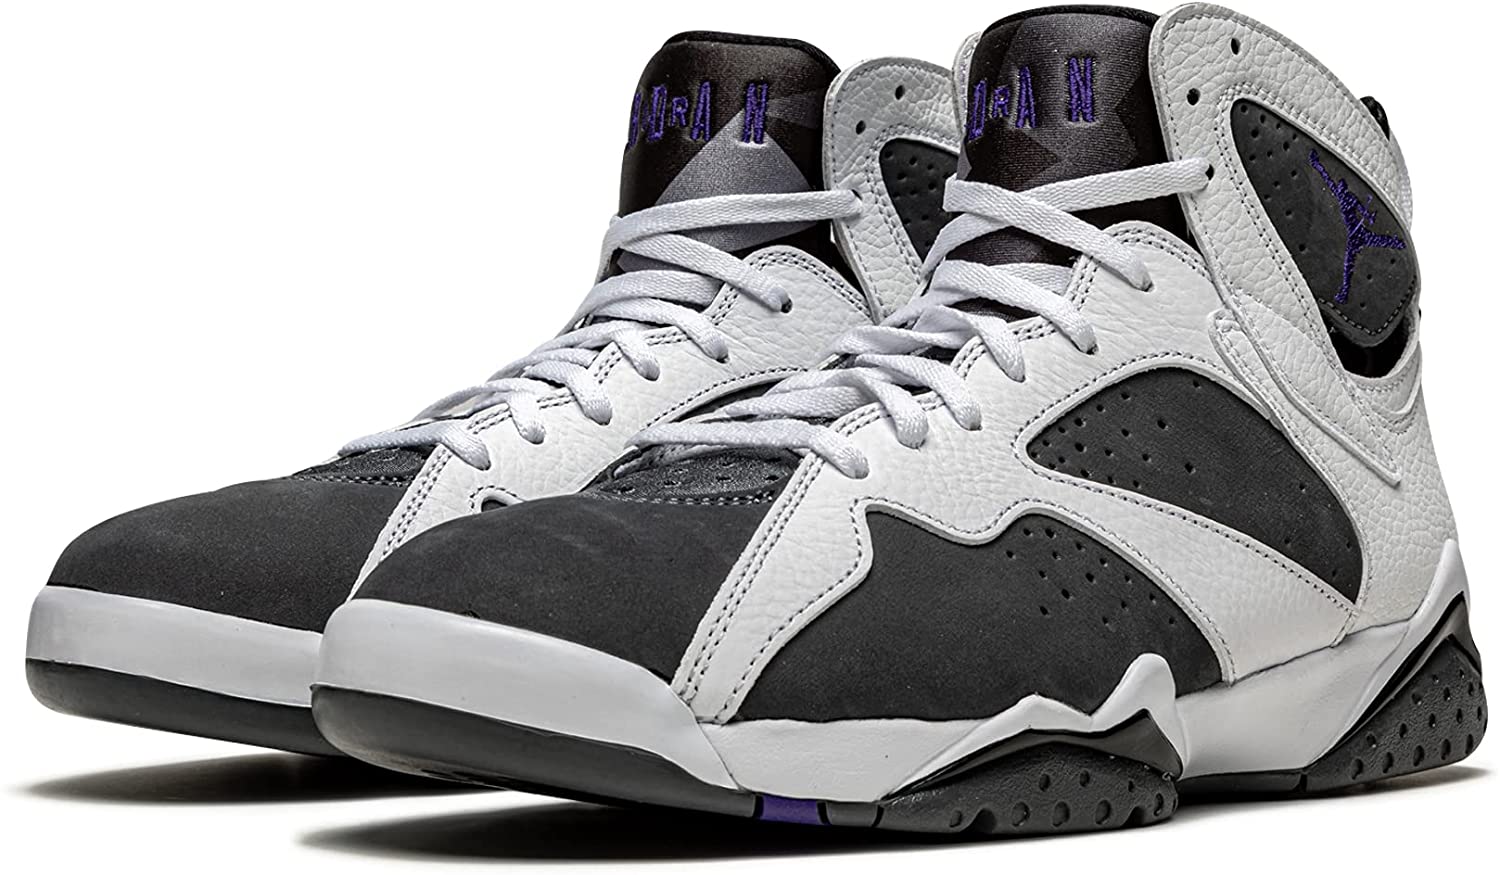 Air Jordan Men's 7 Retro Flint Sneaker - image 2 of 5